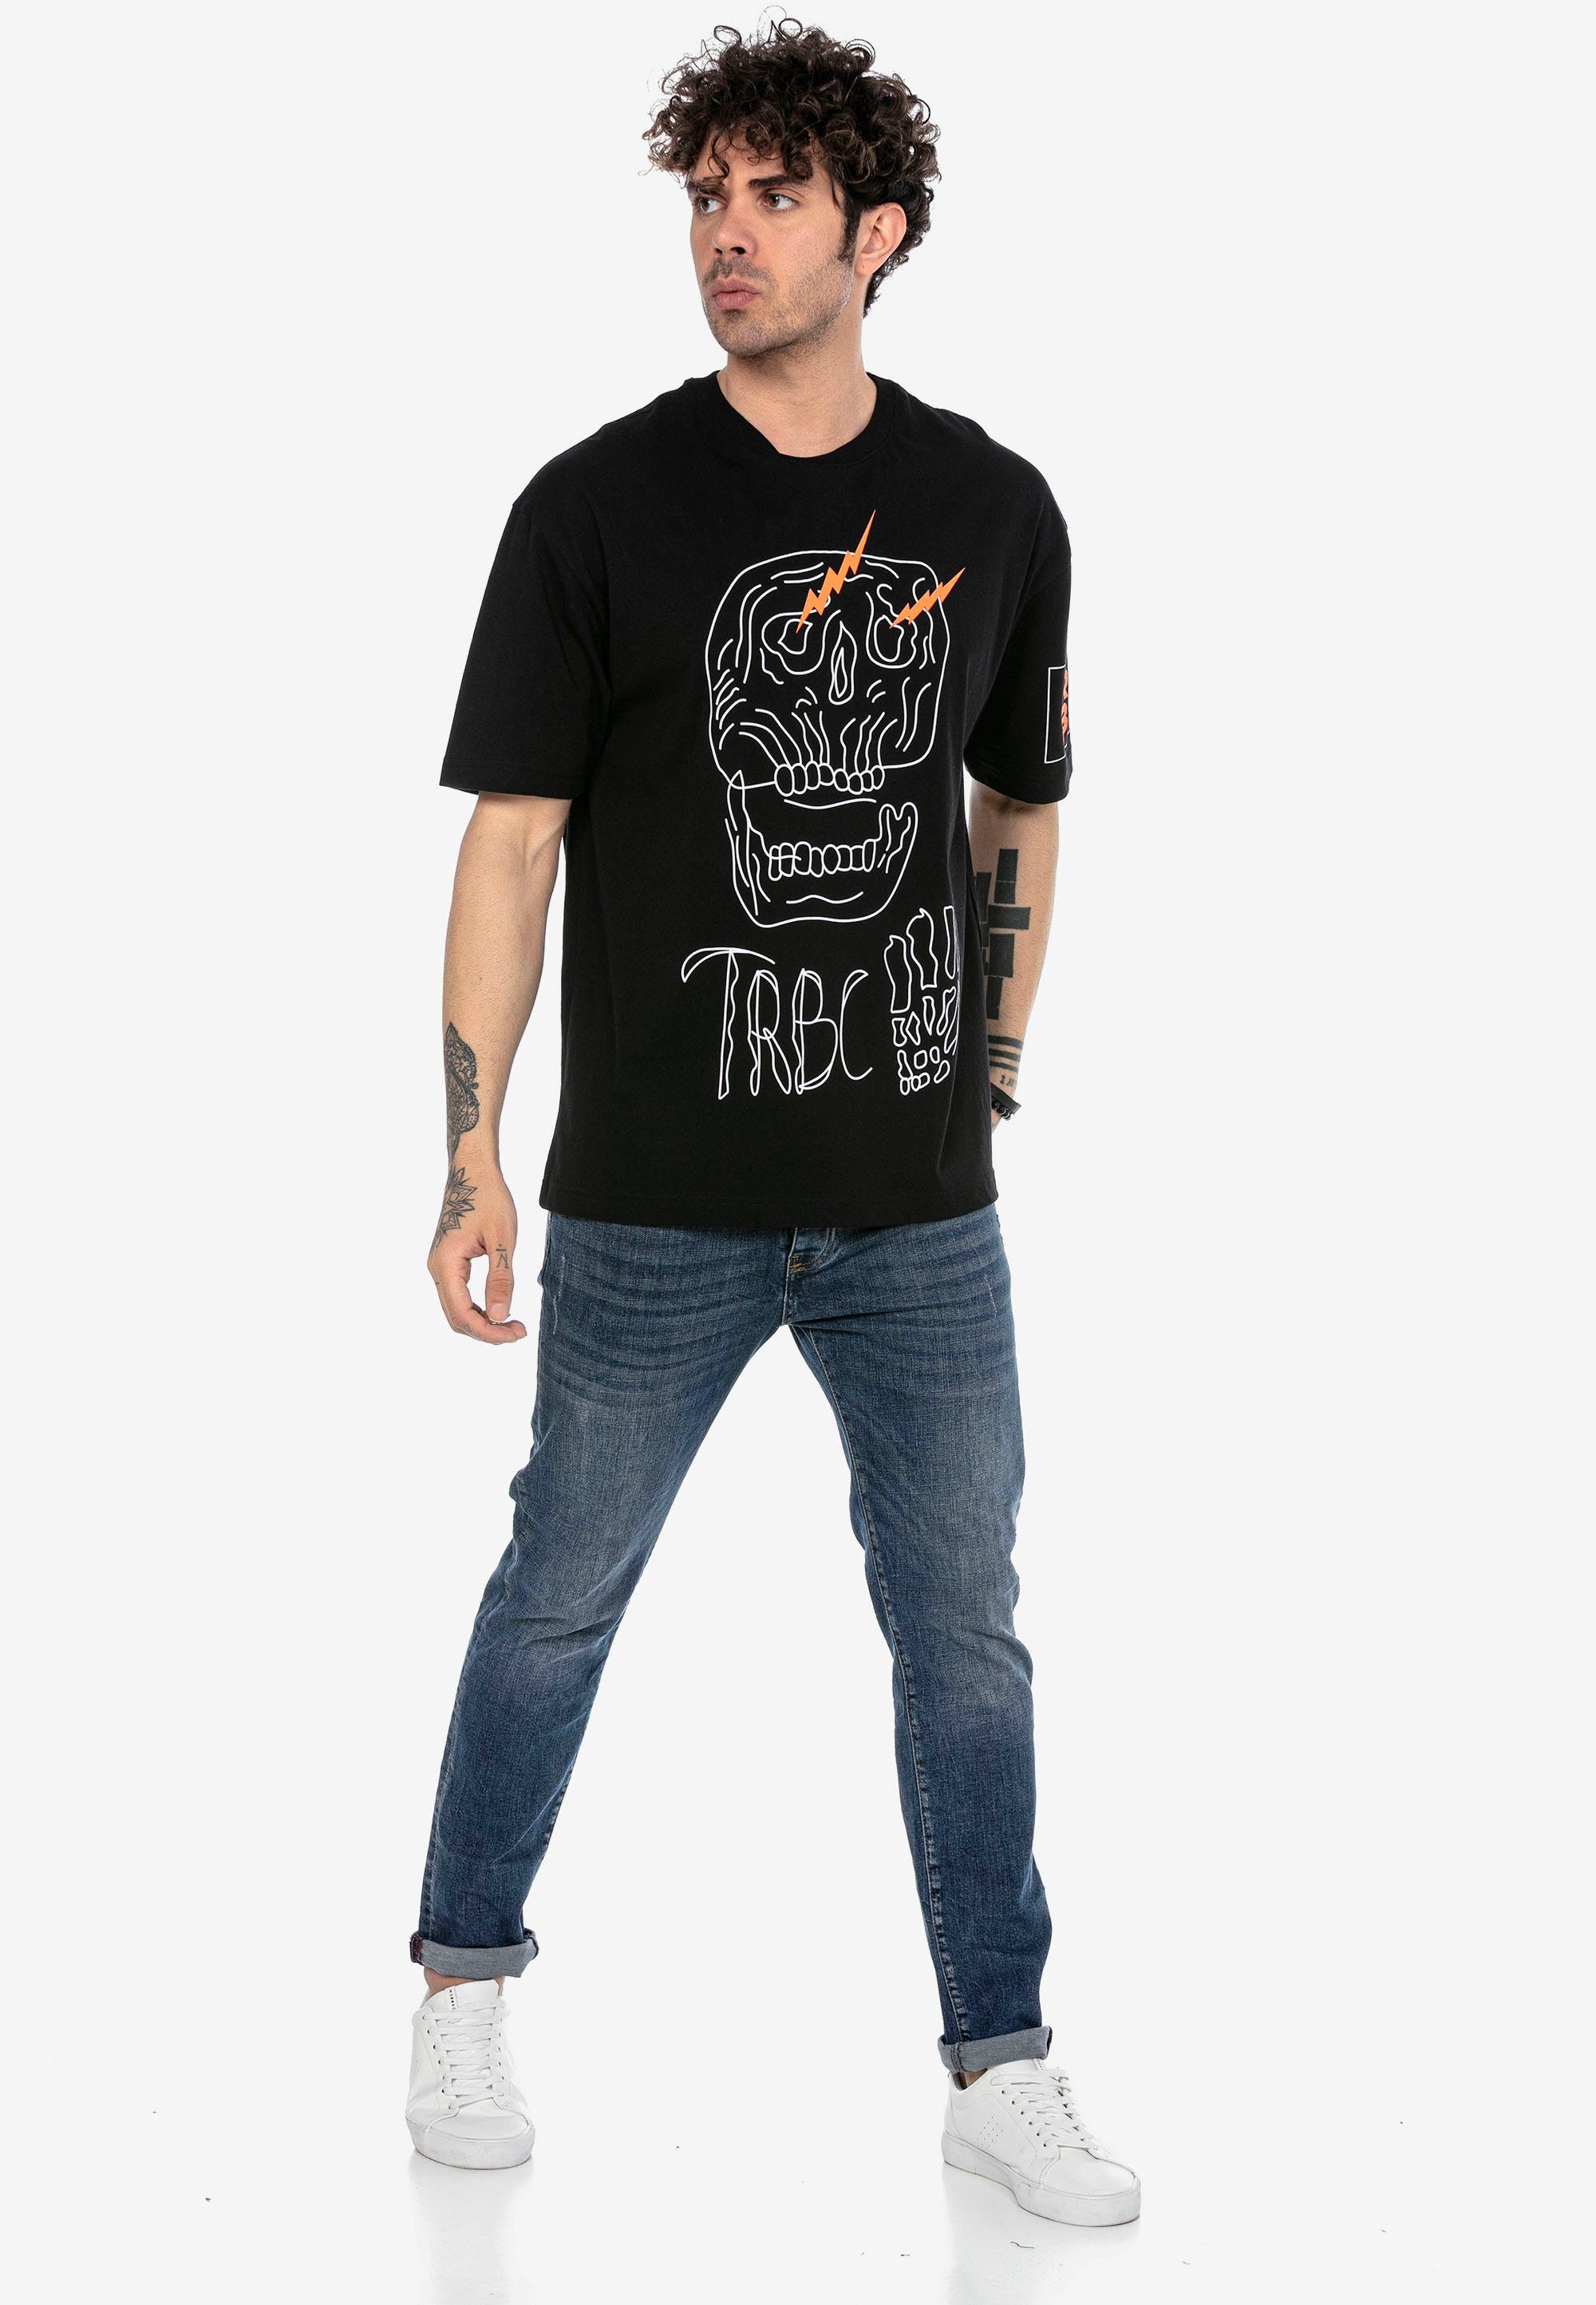 RedBridge T-Shirt stylischem mit schwarz McAllen Totenkopf-Print